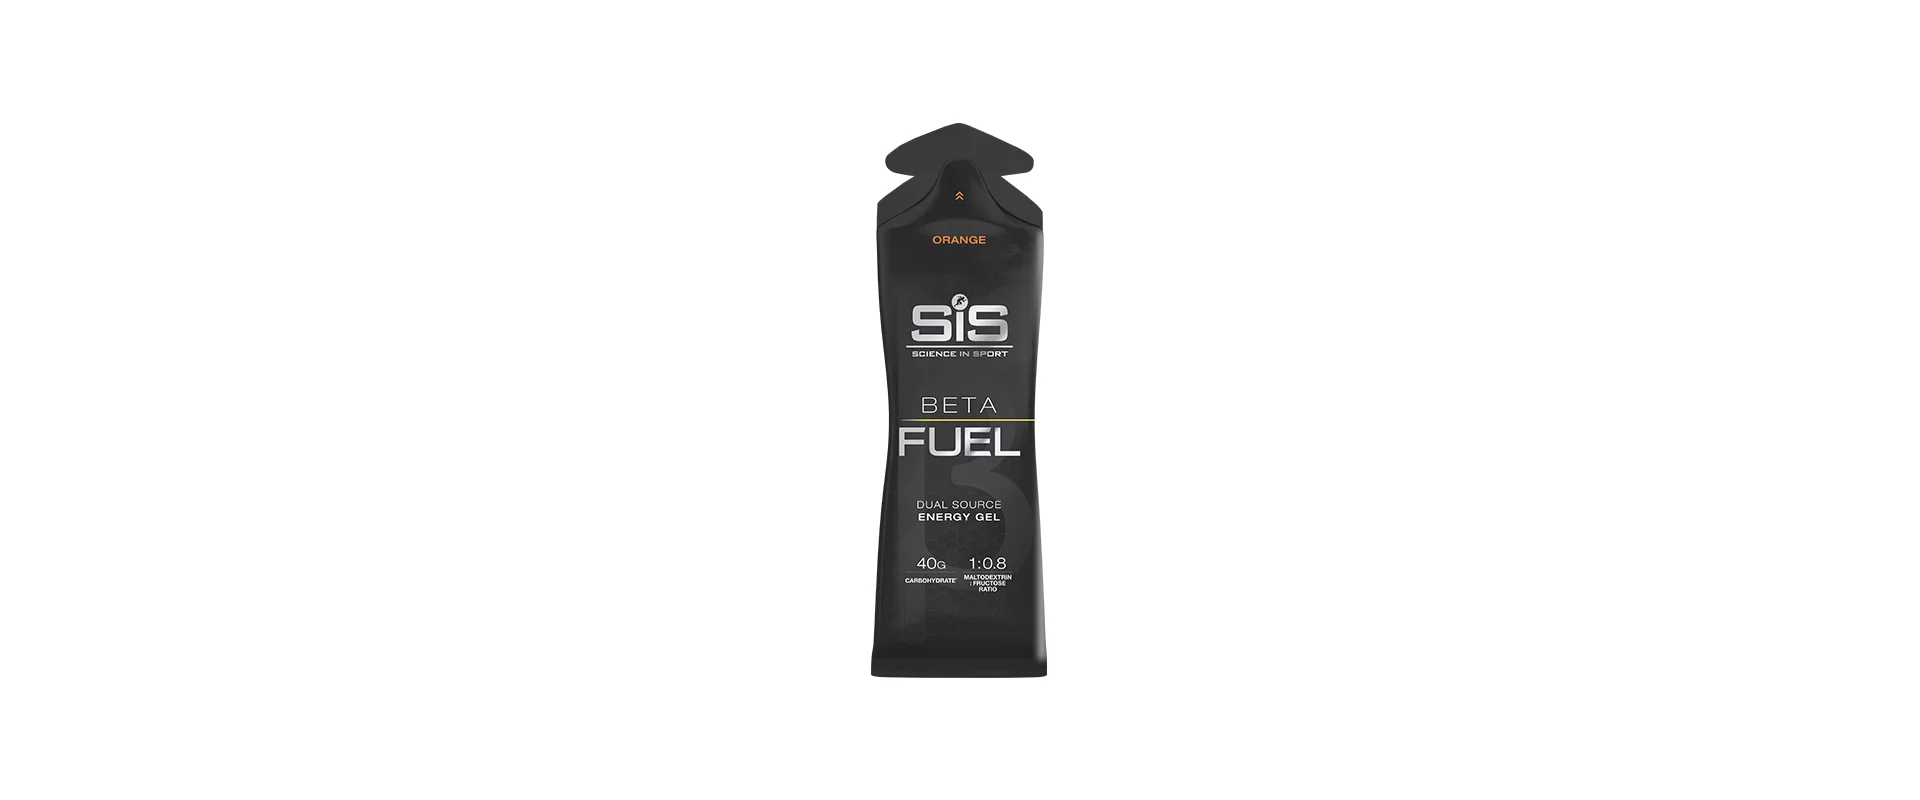 SIS Beta Fuel Апельсин / Гель высокоуглеводный (60ml)